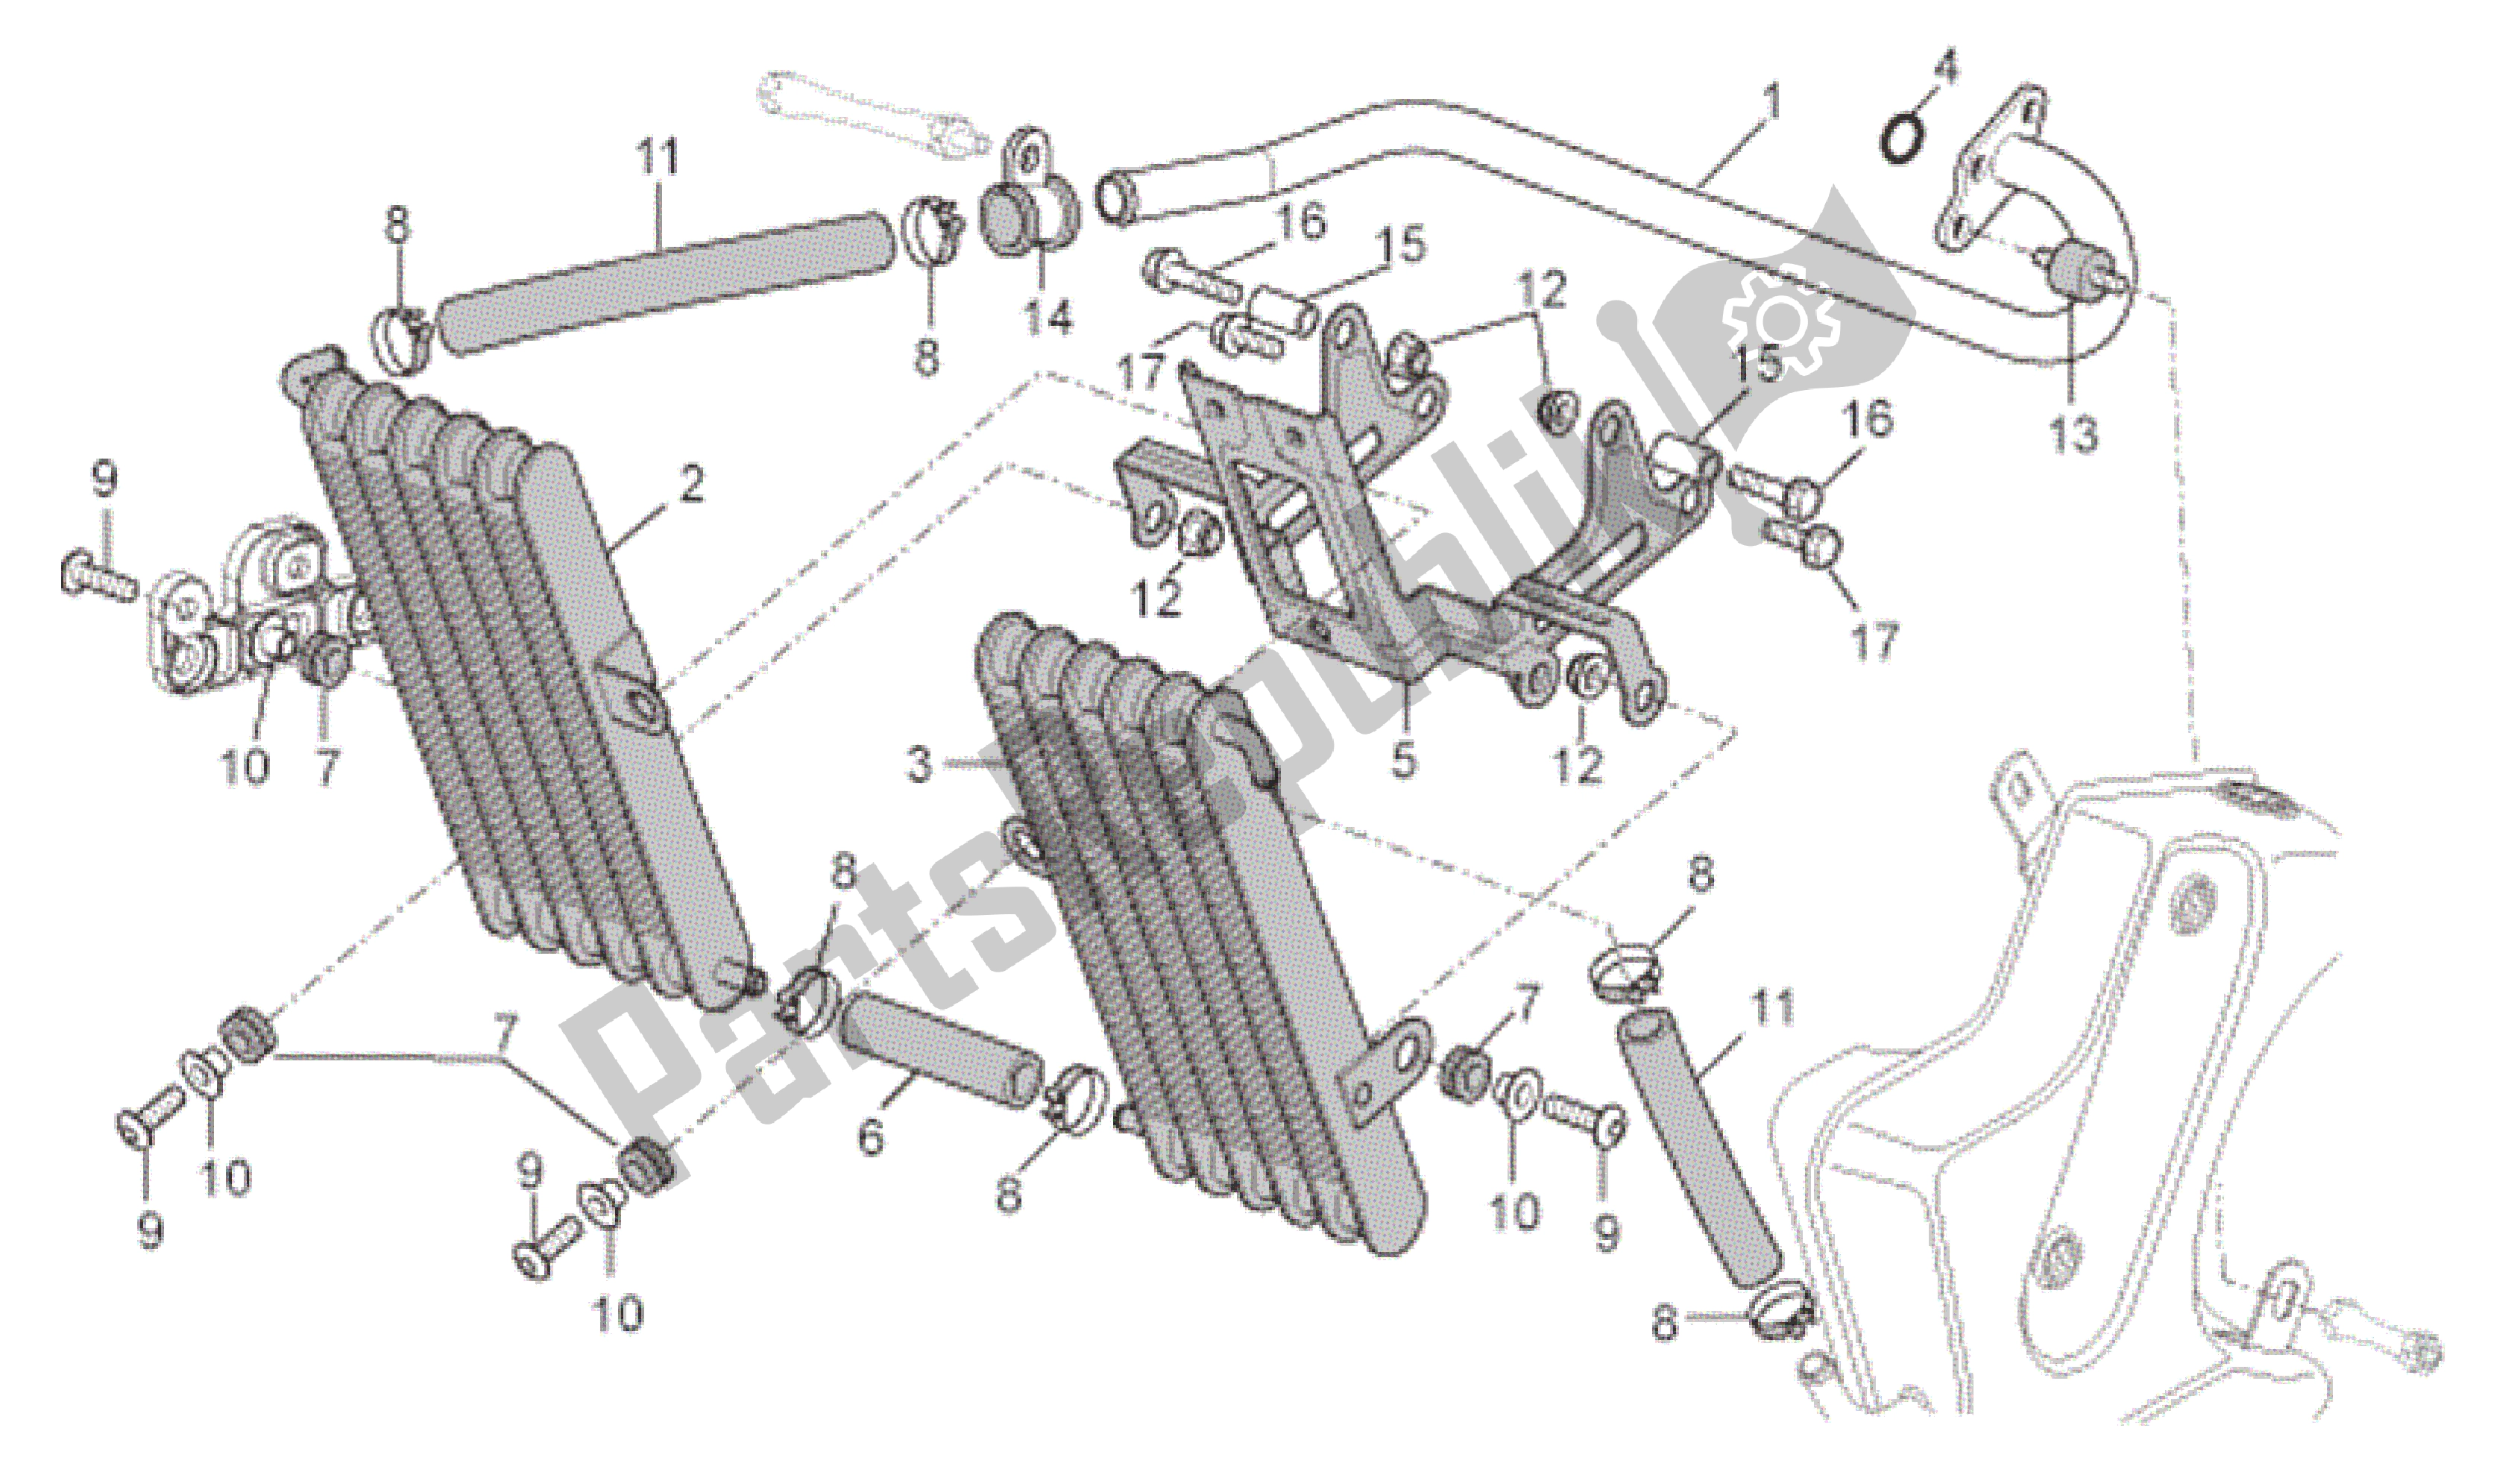 All parts for the Oil Radiator of the Aprilia RSV Tuono R 3985 1000 2006 - 2009